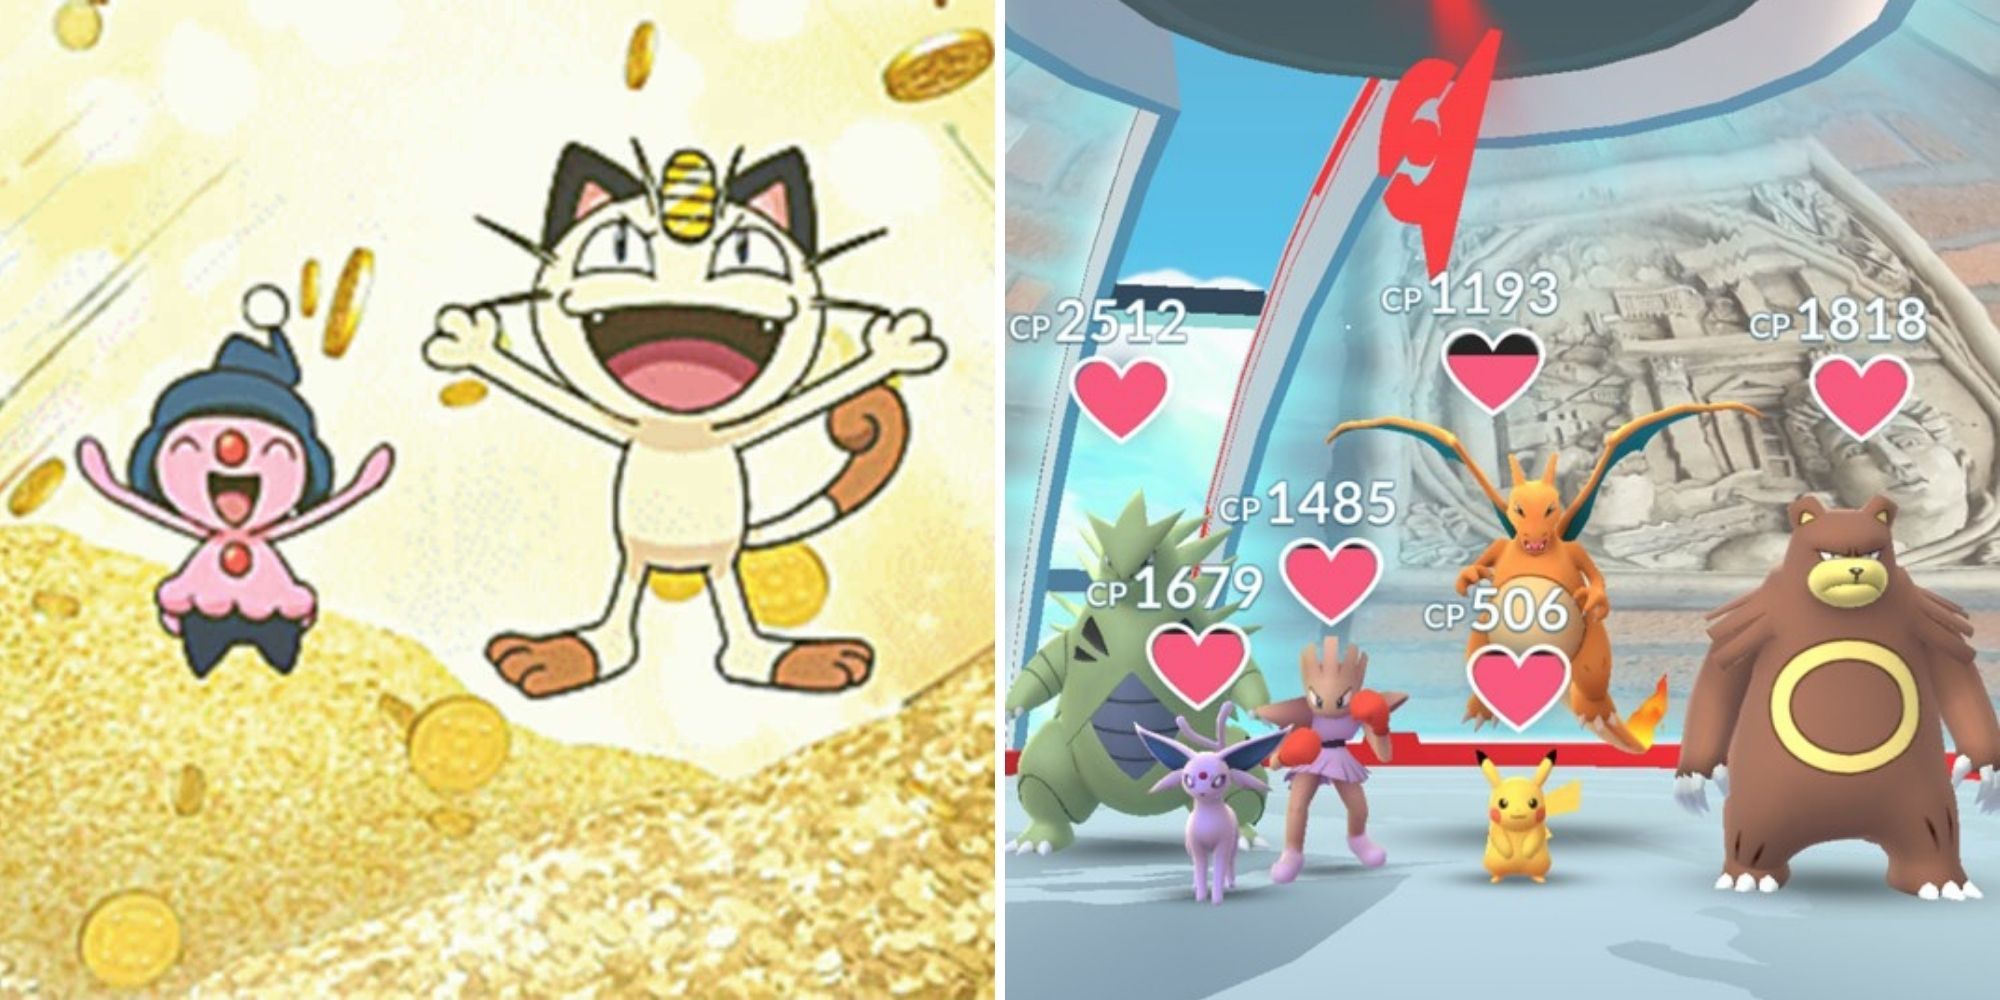 Pokemon Go Meowth in Pokecoin Pile (a sinistra), Palestra con Pokemon dentro (a destra)